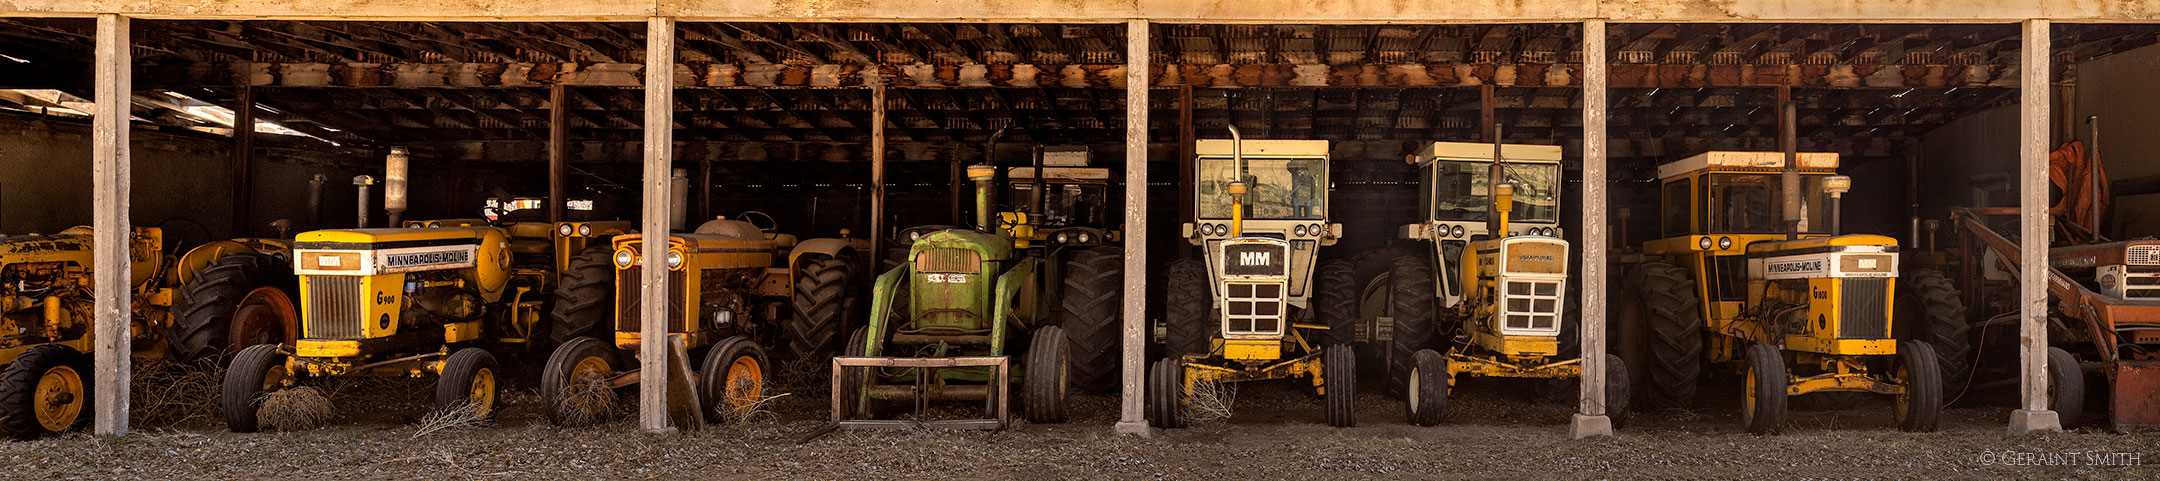 Minneapolis Moline tractors, Jaroso, Colorado